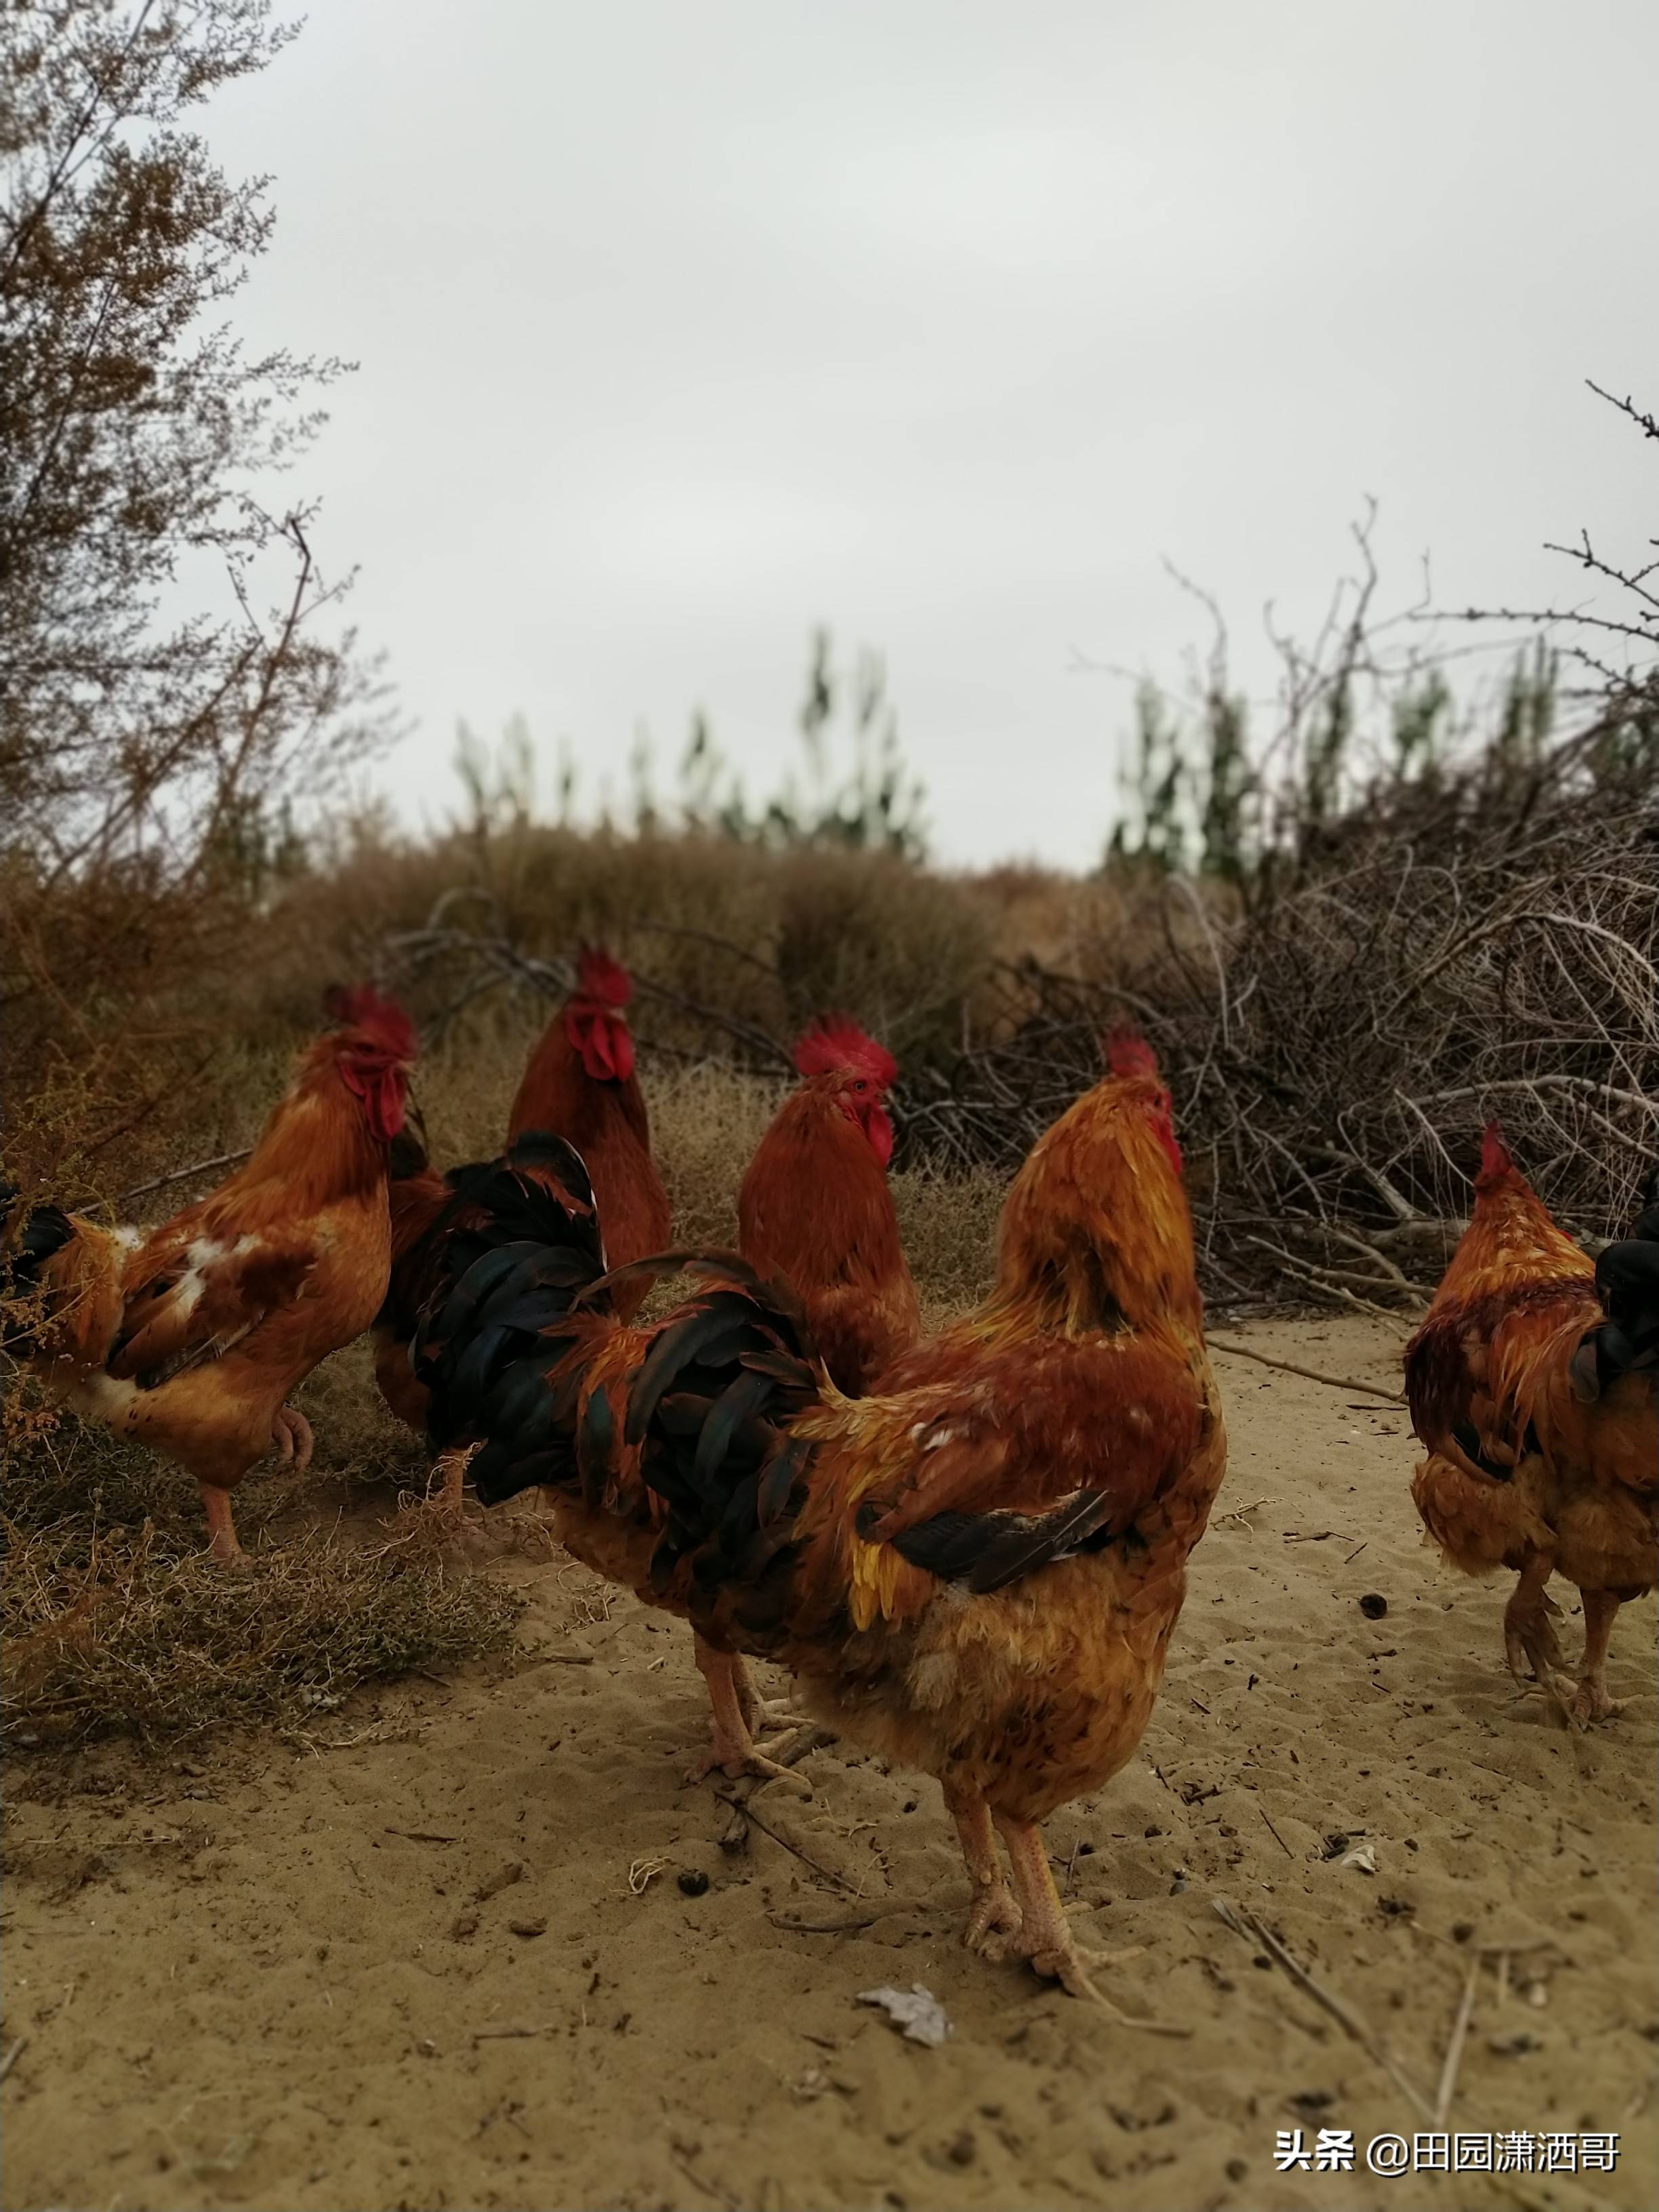 原创农村老妈妈放养的红公鸡霸气十足沙漠觅食的健壮身姿令人叹服